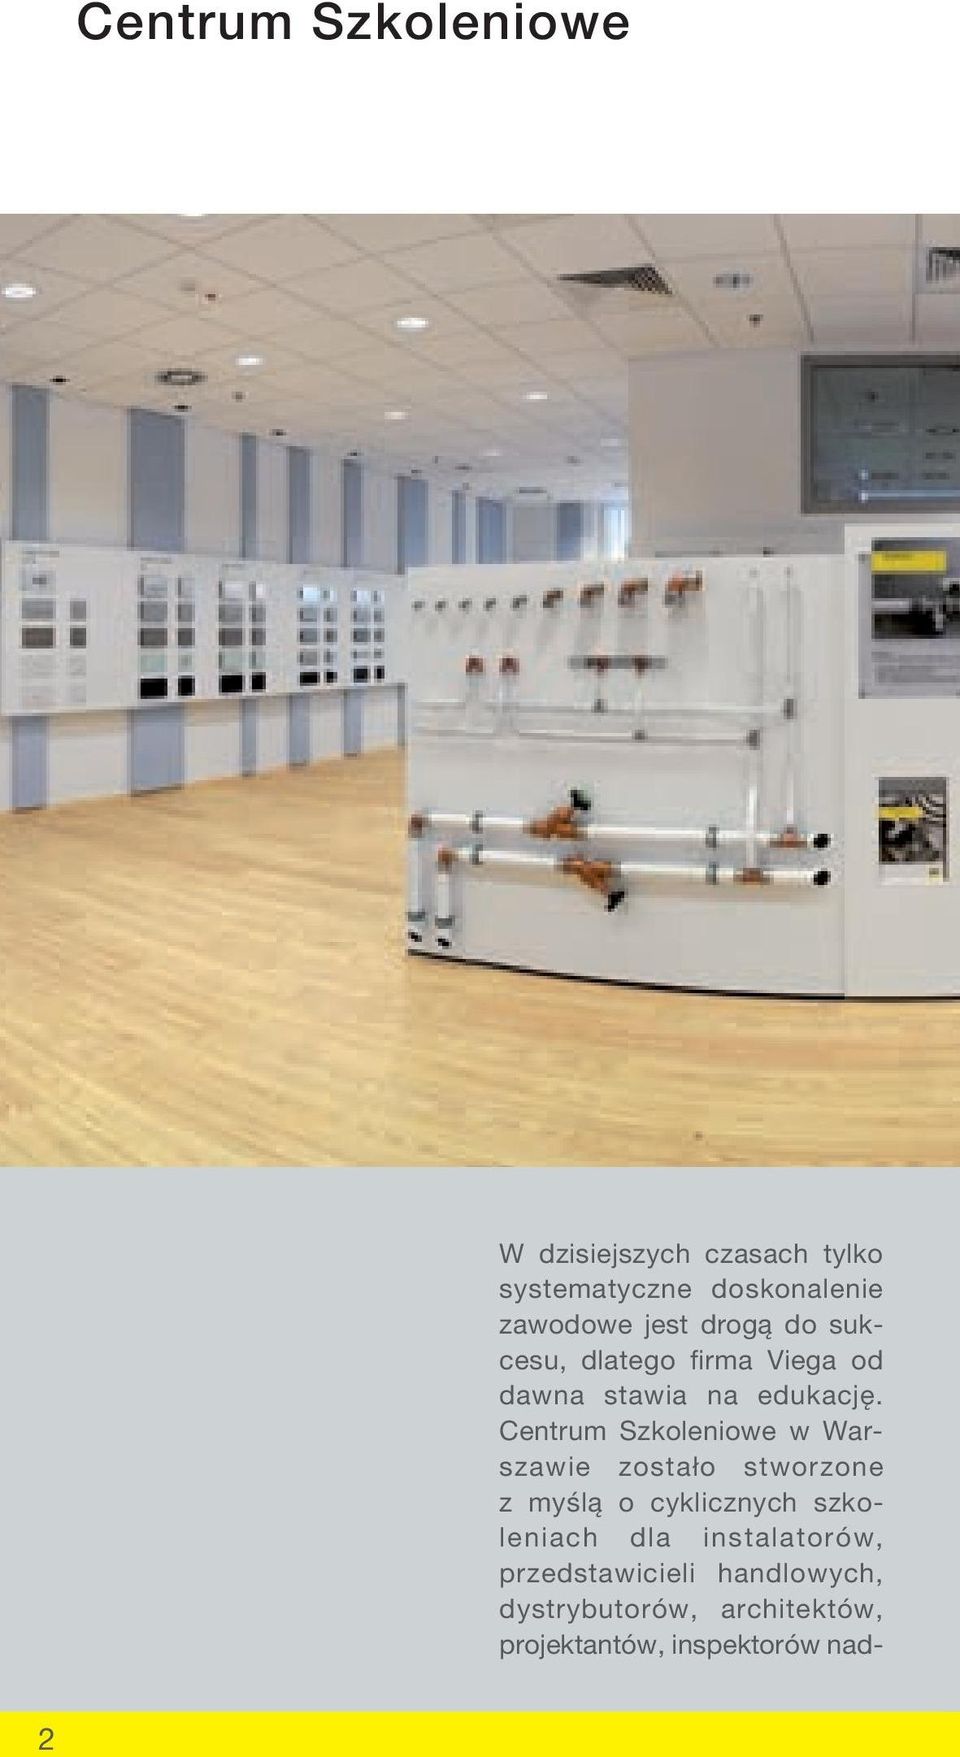 Centrum Szkoleniowe w Warszawie zostało stworzone z myślą o cyklicznych szkoleniach